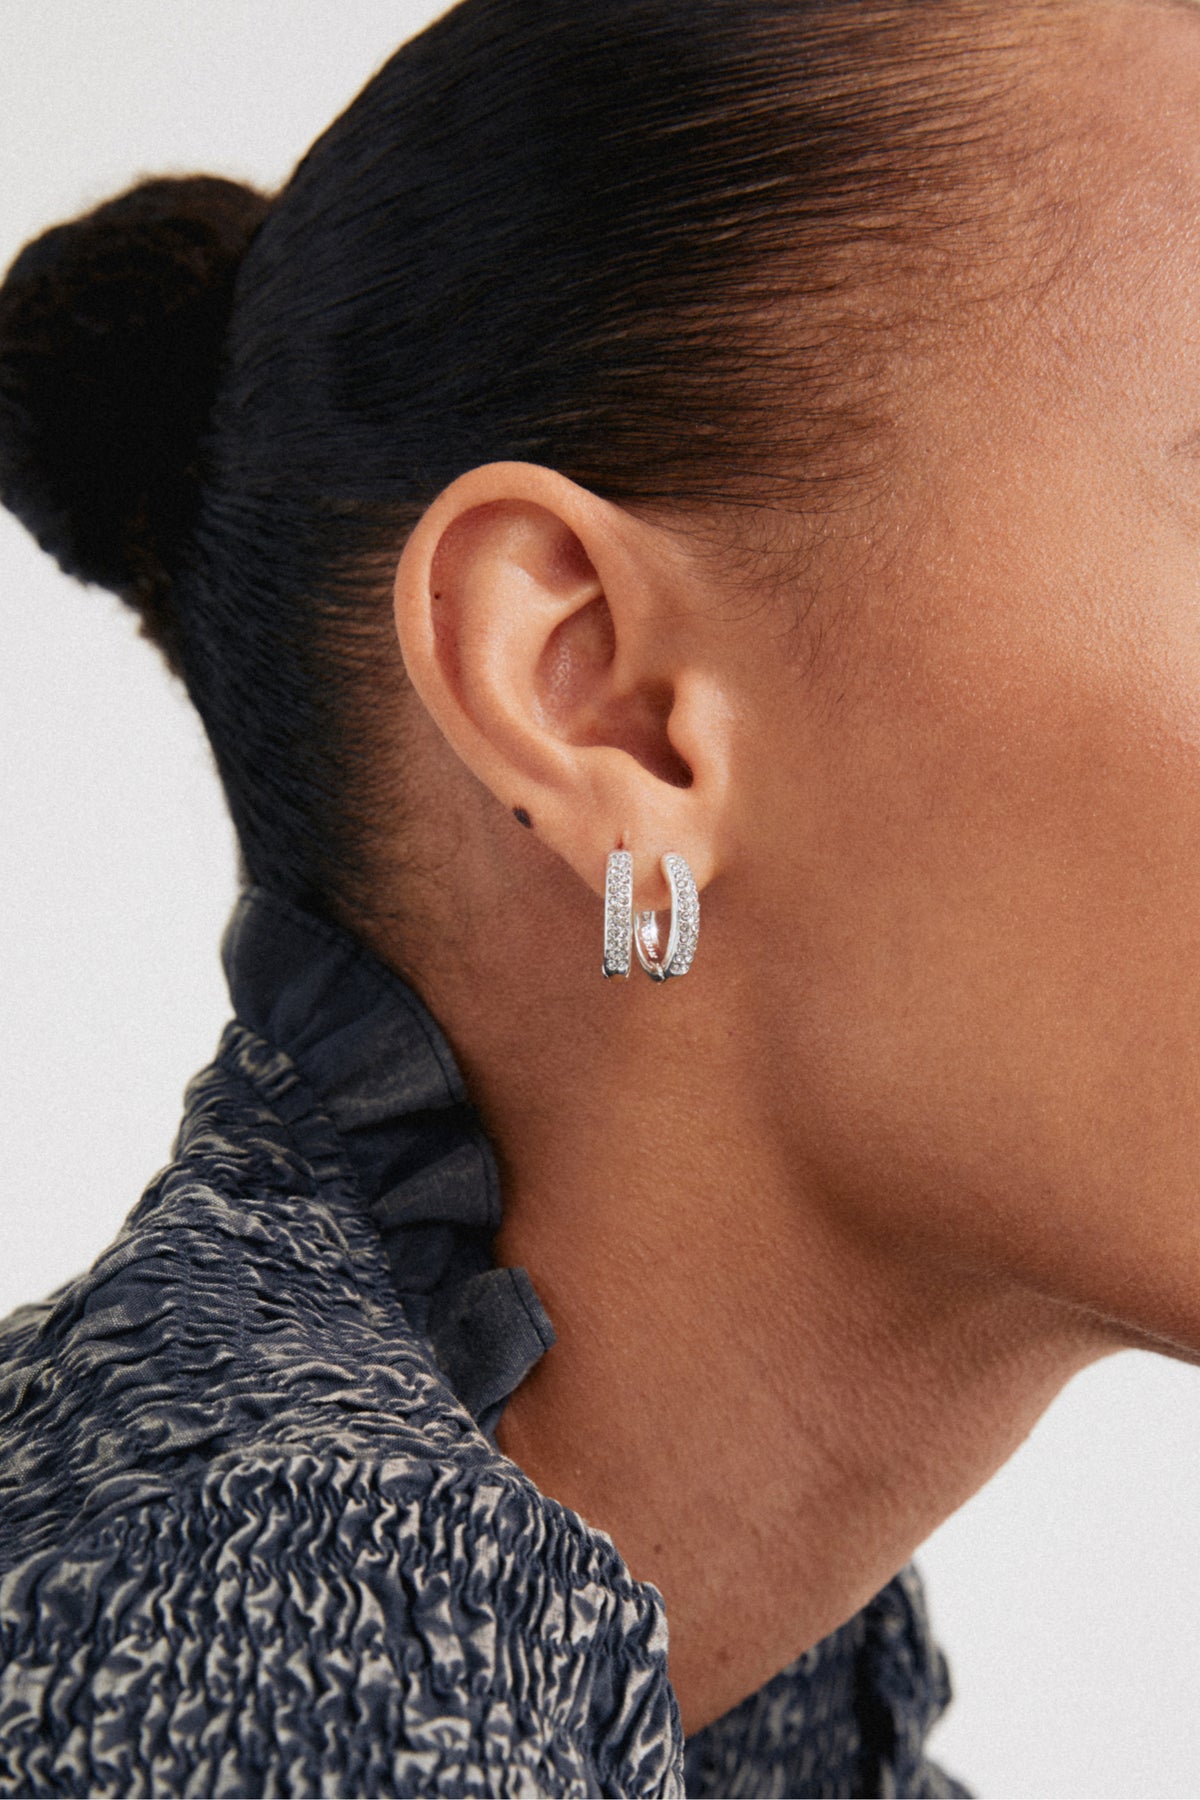 Bloom Recycled Crystal Hoop Earrings - Silver Plated